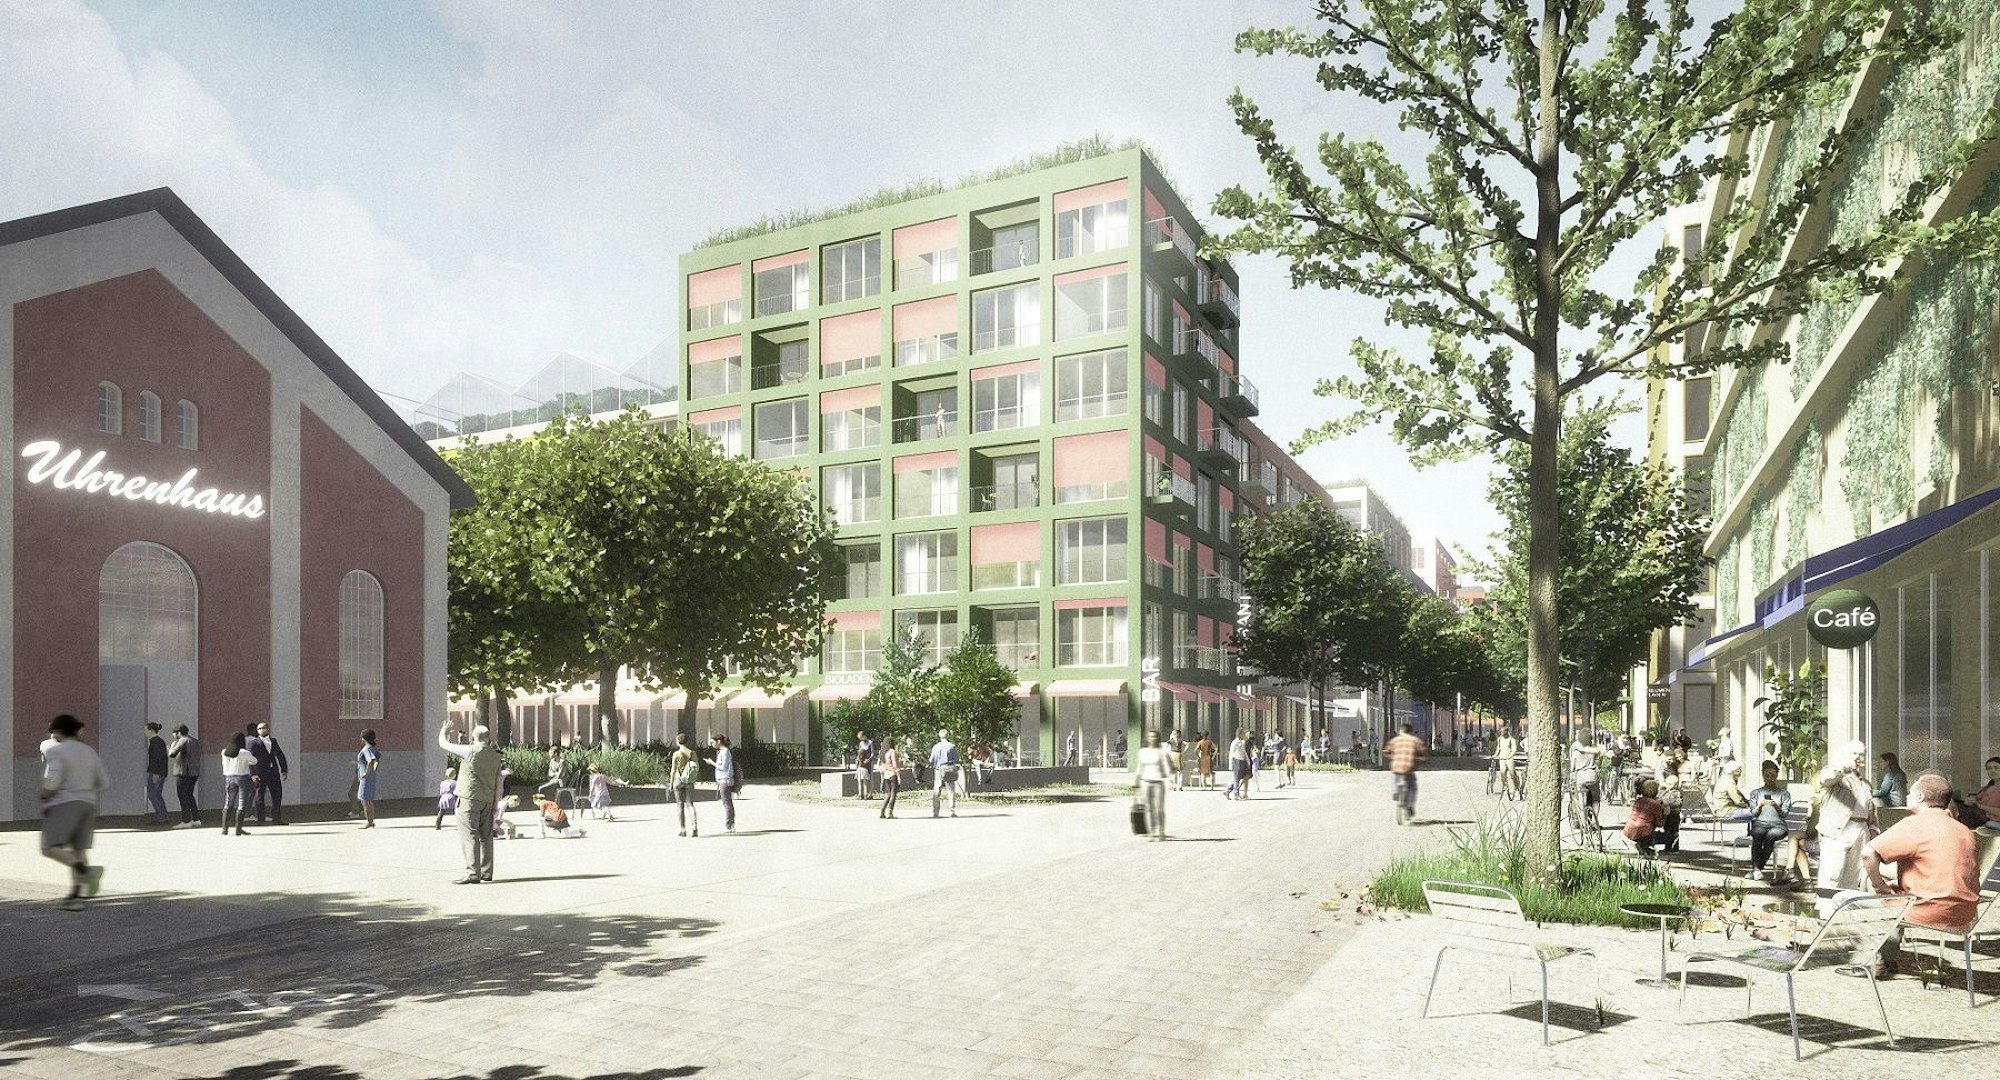 Die Visualisierung zeigt Wohnbauten, mit autofreien Straßen, an denen Bäume und Bänke stehen.